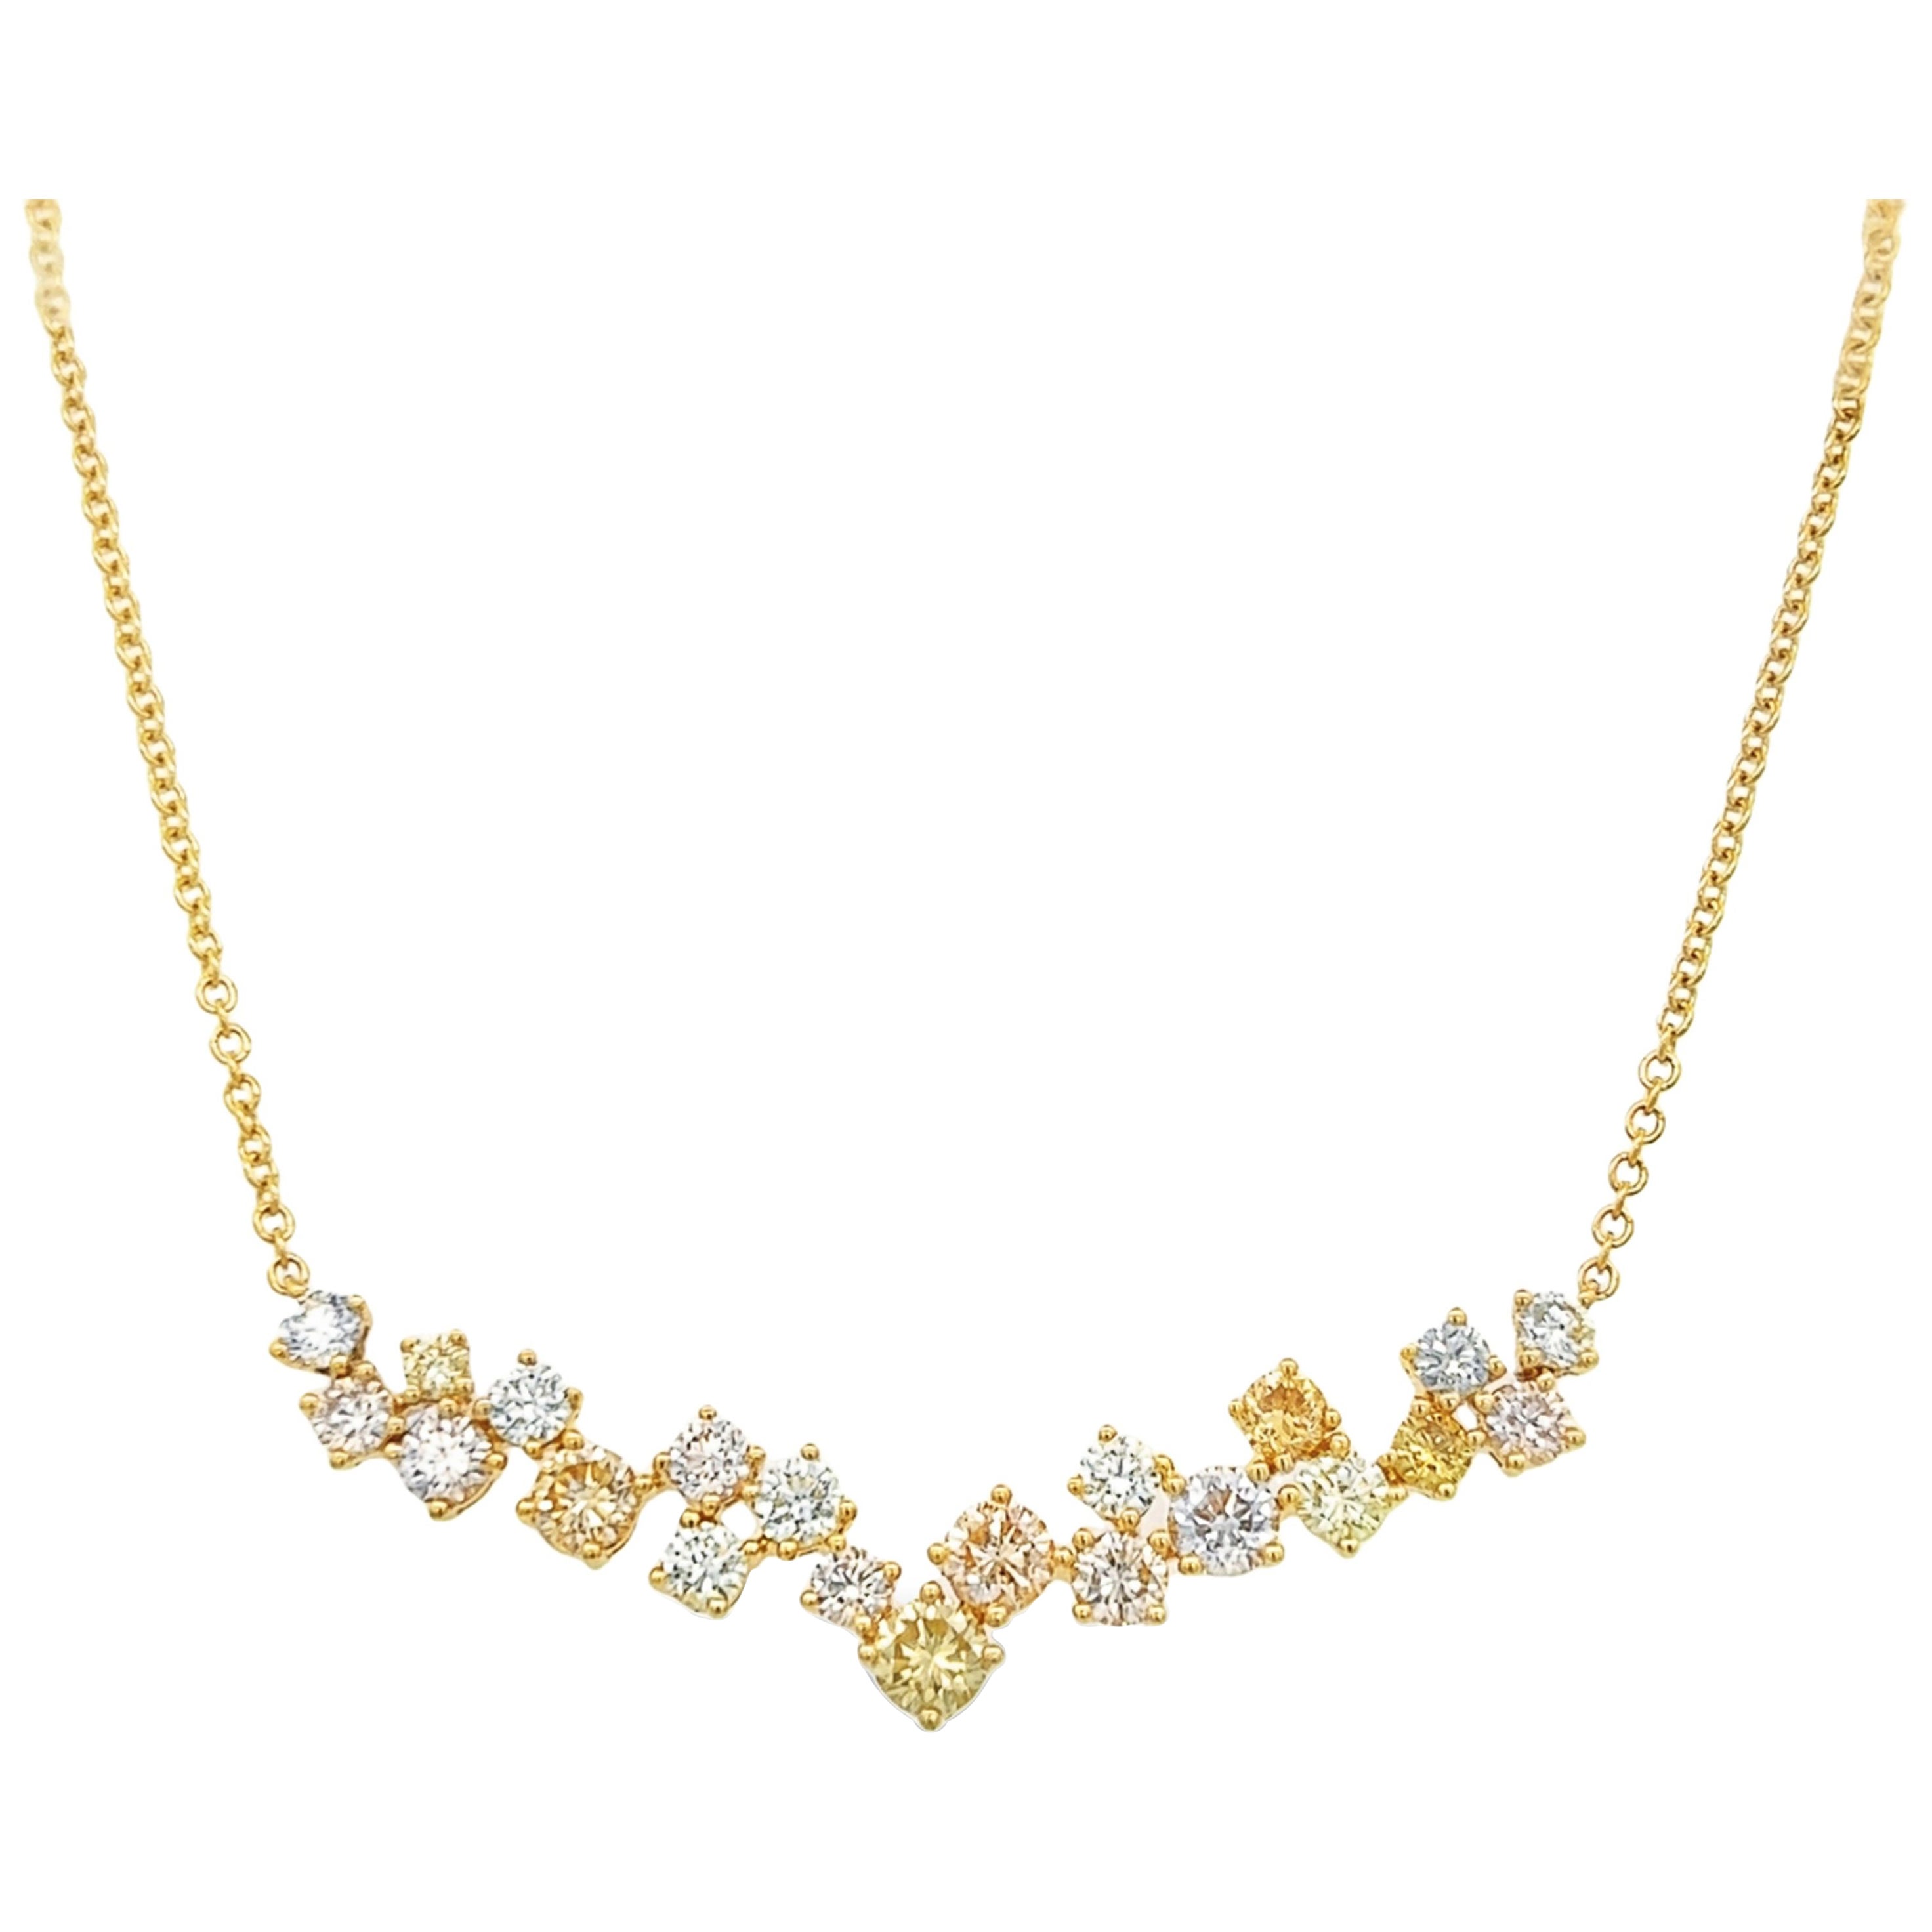 Alexander Beverly Hills Collier pendentif en or 18 carats avec diamants blancs et jaunes de 4,56 carats